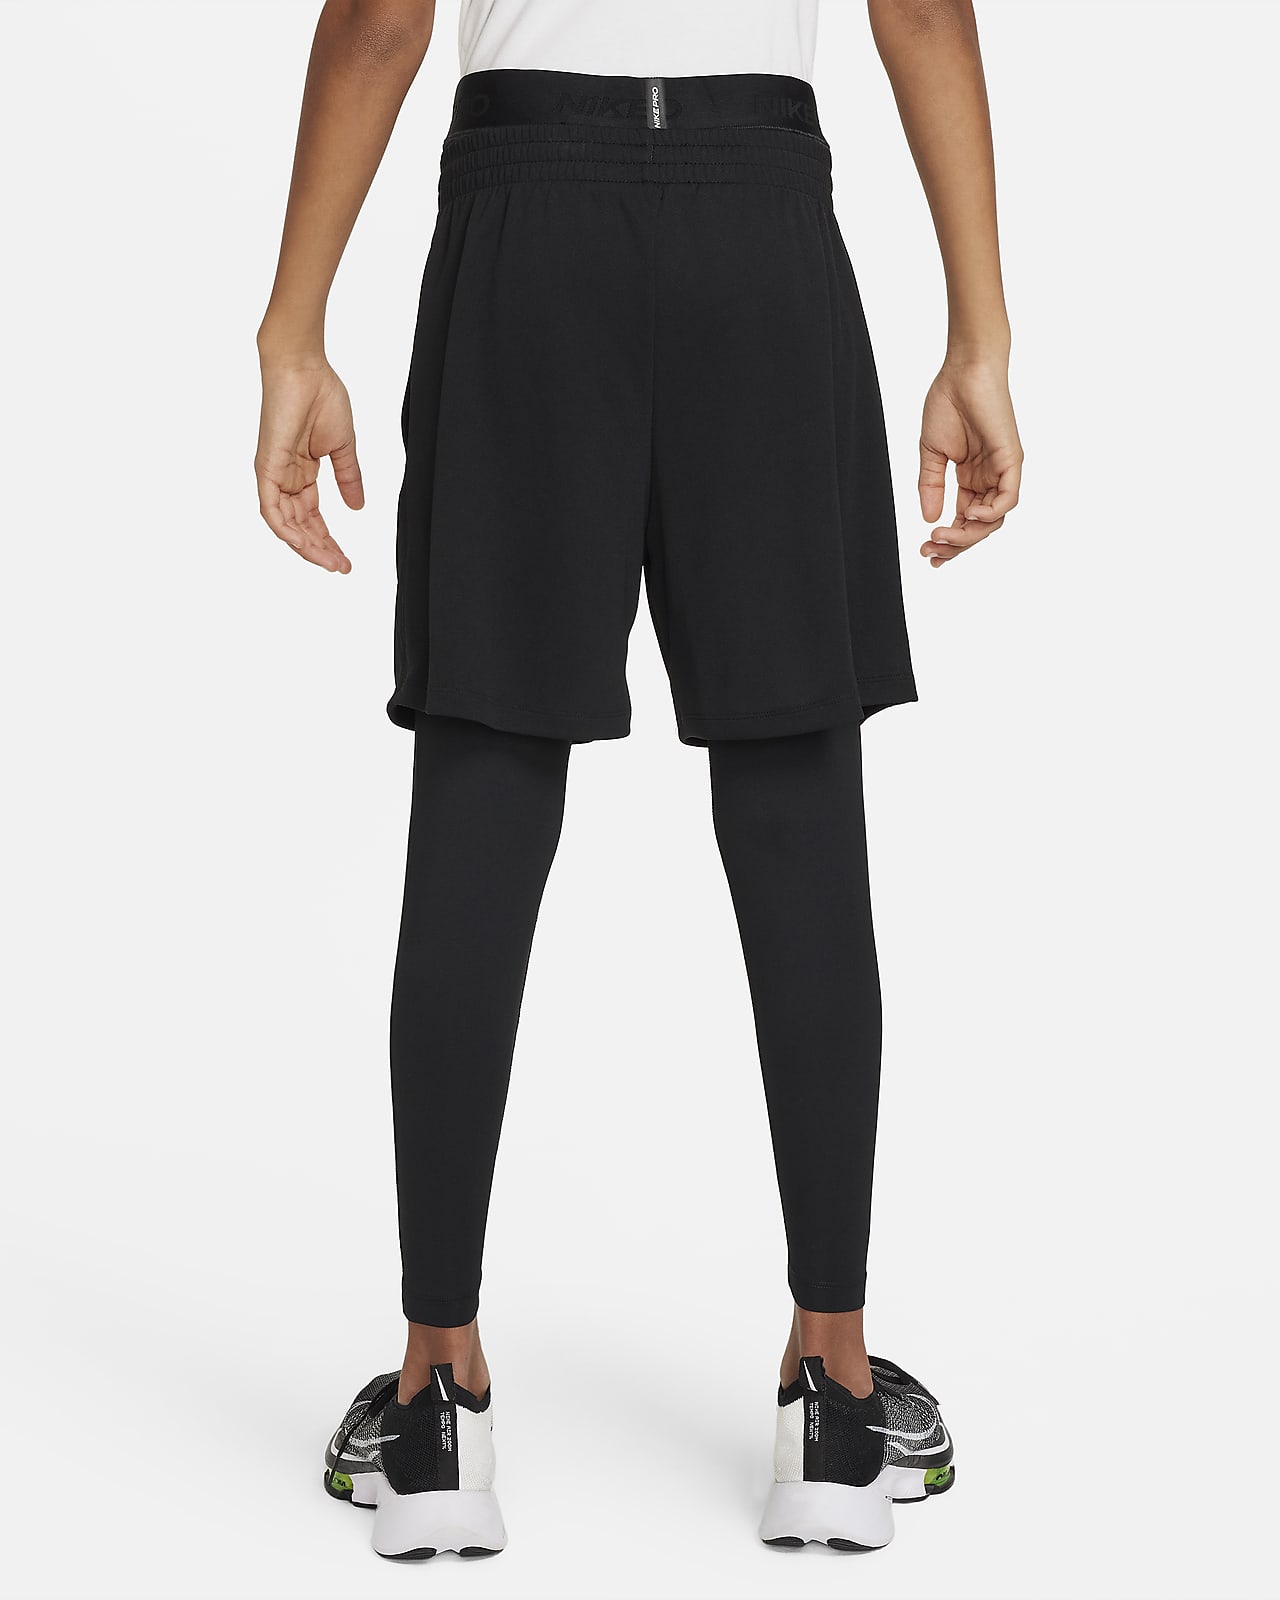 Nike Sportswear Dri-FIT Older Kids' (Girls') Leggings